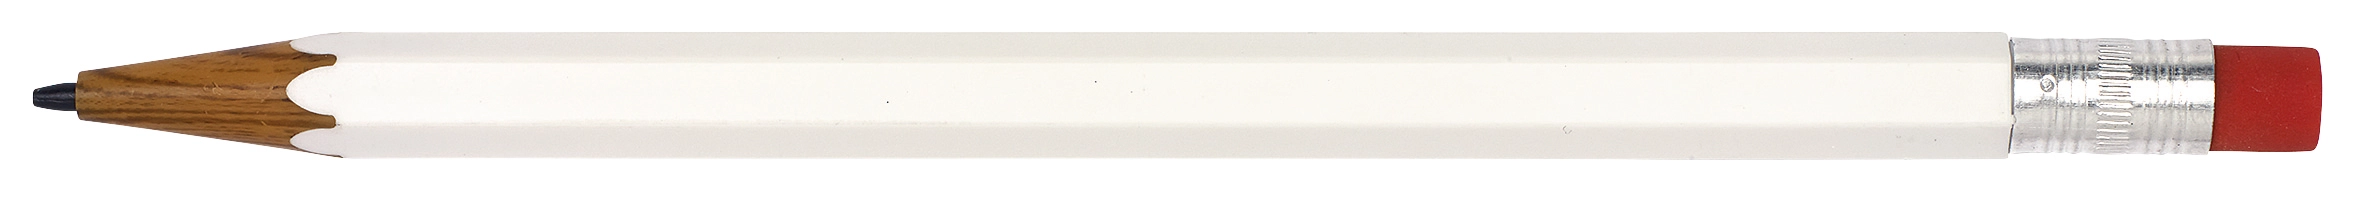 Ołówek automatyczny LOOKALIKE, biały 56-1101190 biały